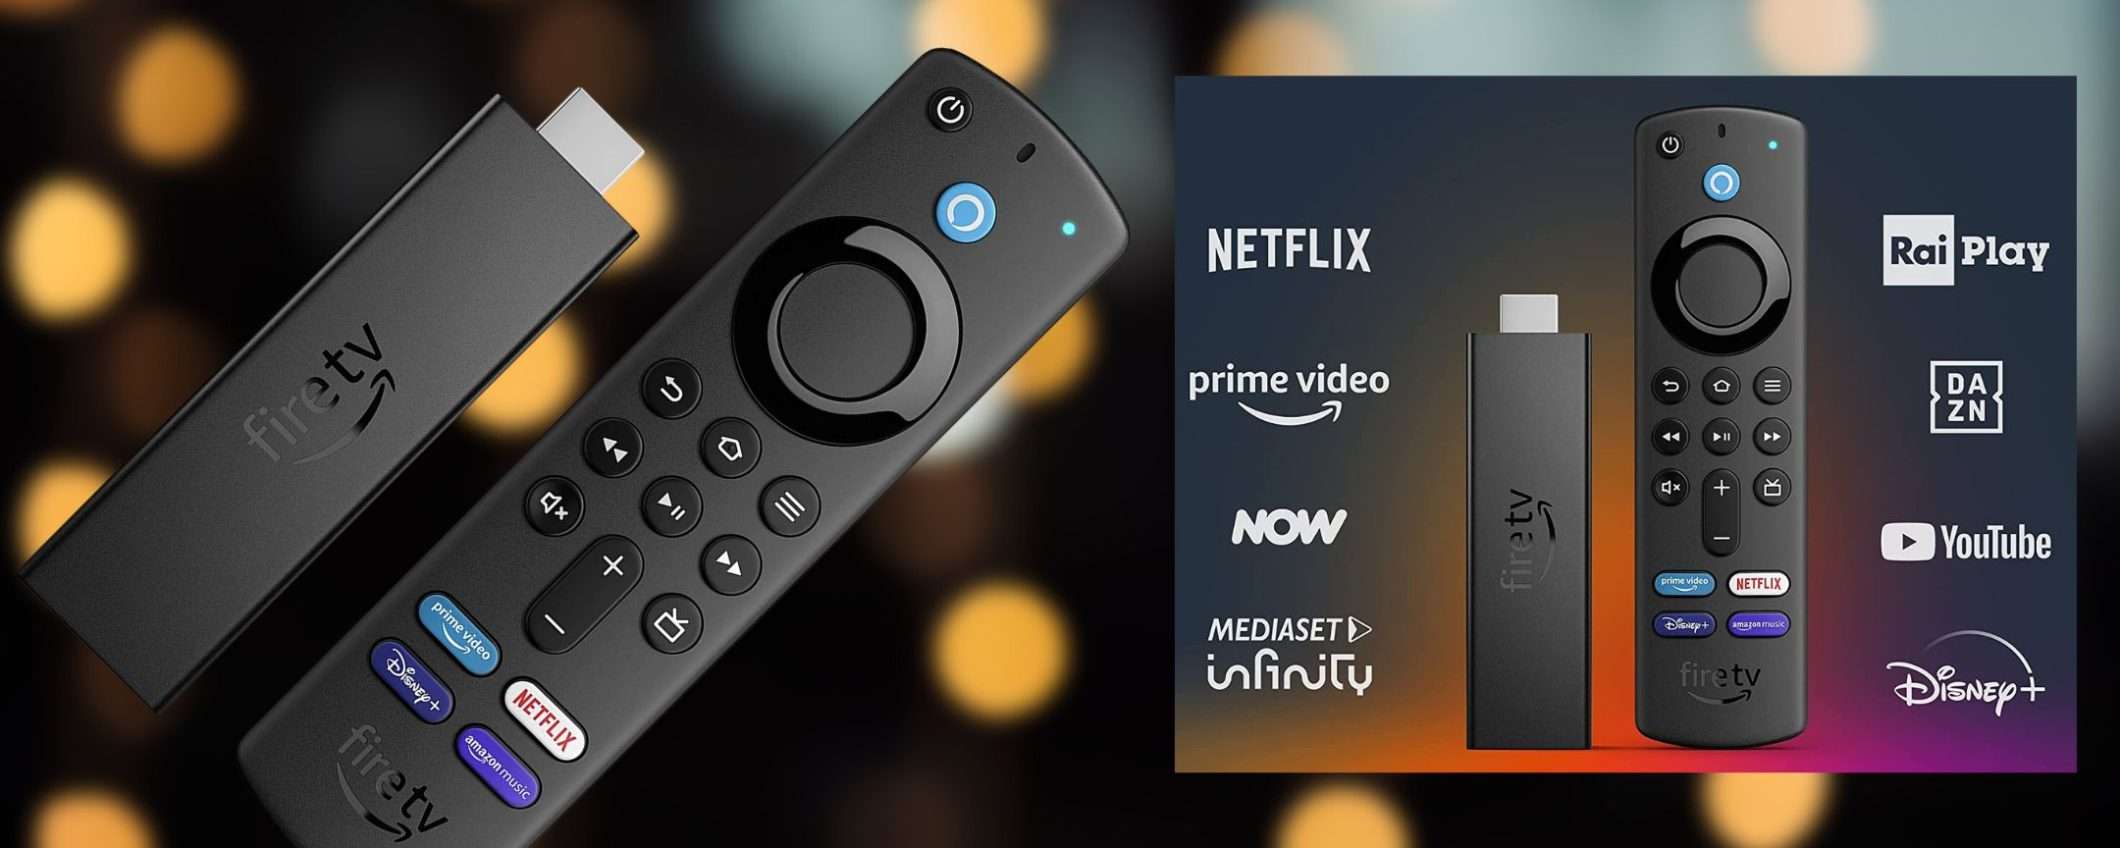 Fire TV Stick 4K scontato del 50% su Amazon: prezzo INCREDIBILE